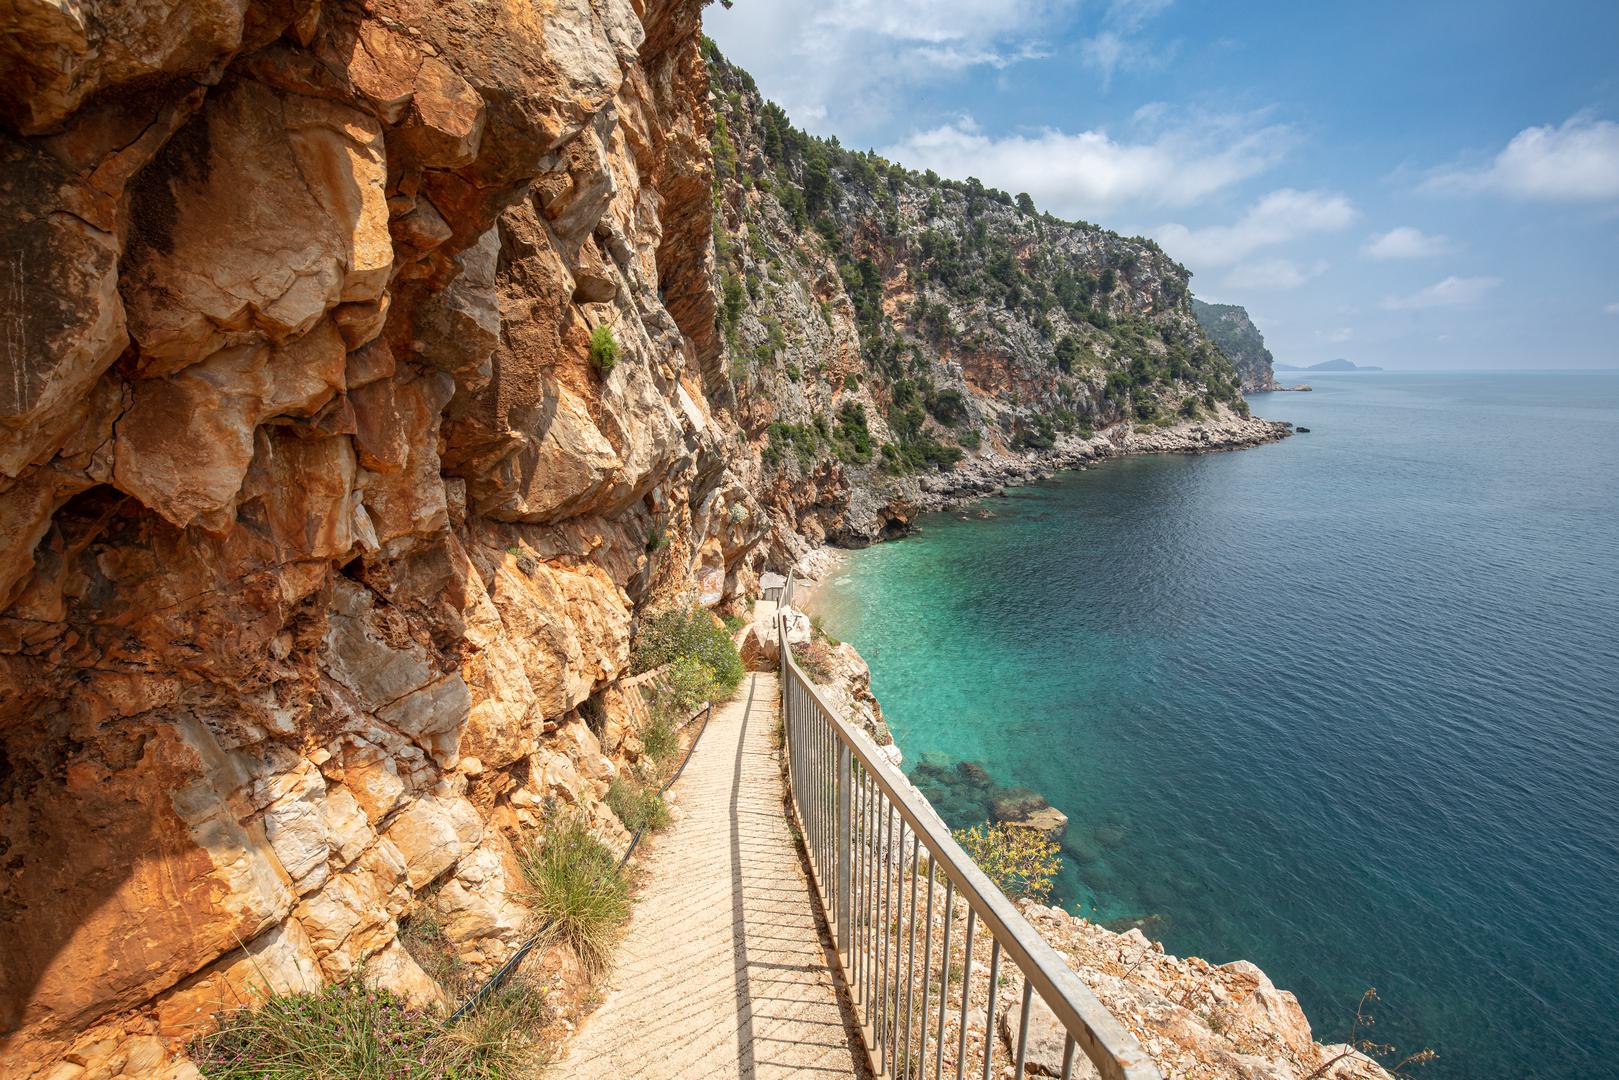 Španjolska se istaknula kao ultimativno odredište za ljetni odmor s 28% od 25 najboljih plaža, uključujući najbolju u Europi: La Concha. No, ni Hrvatska nije zaostajala, s 4 plaže svjetske klase koje su dospjele na popis, a dubrovačka plaža Pasjača zauzela je treće mjesto u ukupnom poretku.